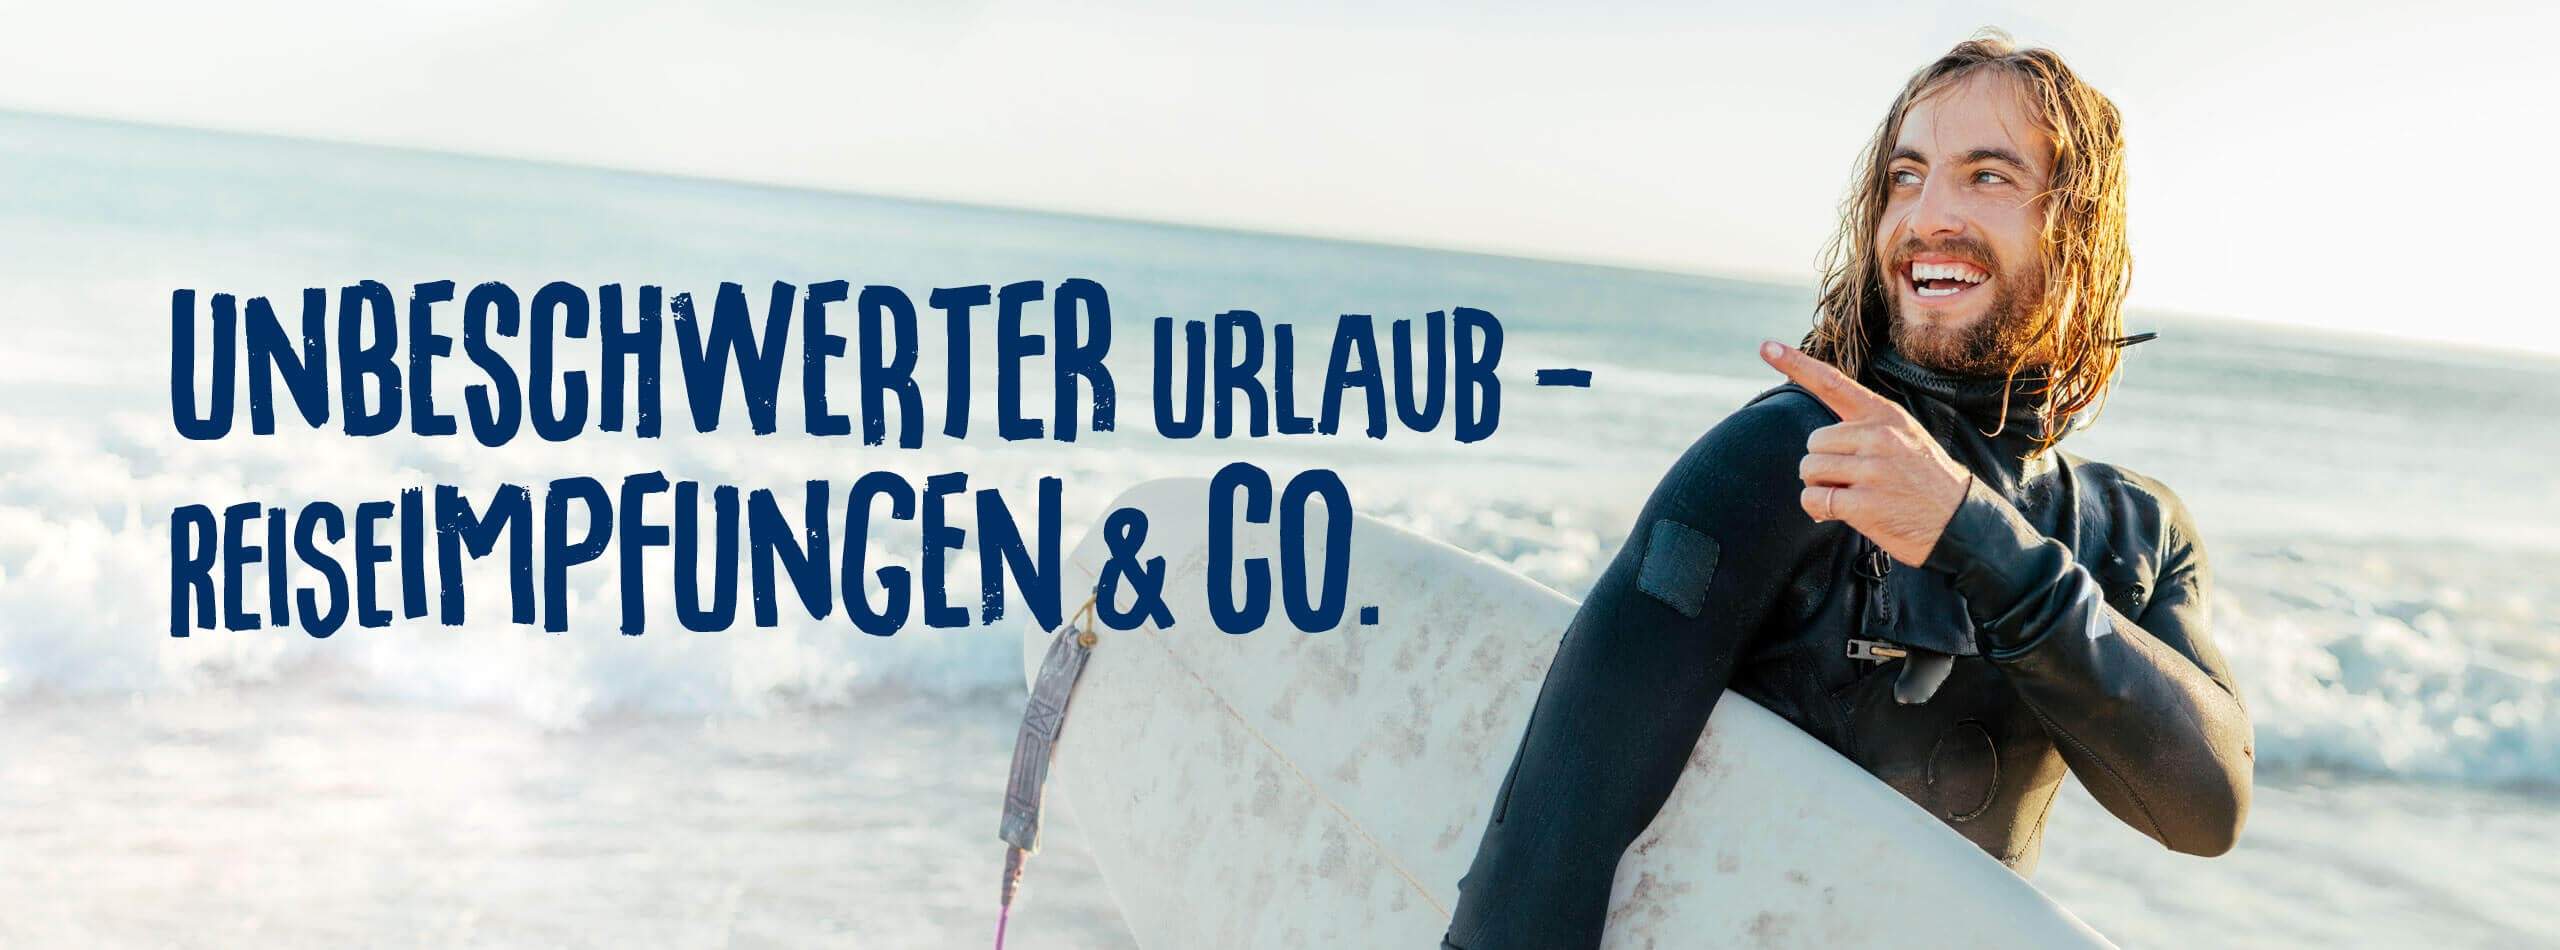 Mann mit Surfbrett zeigt auf Slogan Unbeschwerter Urlaub mit Reiseimpfungen und Co.